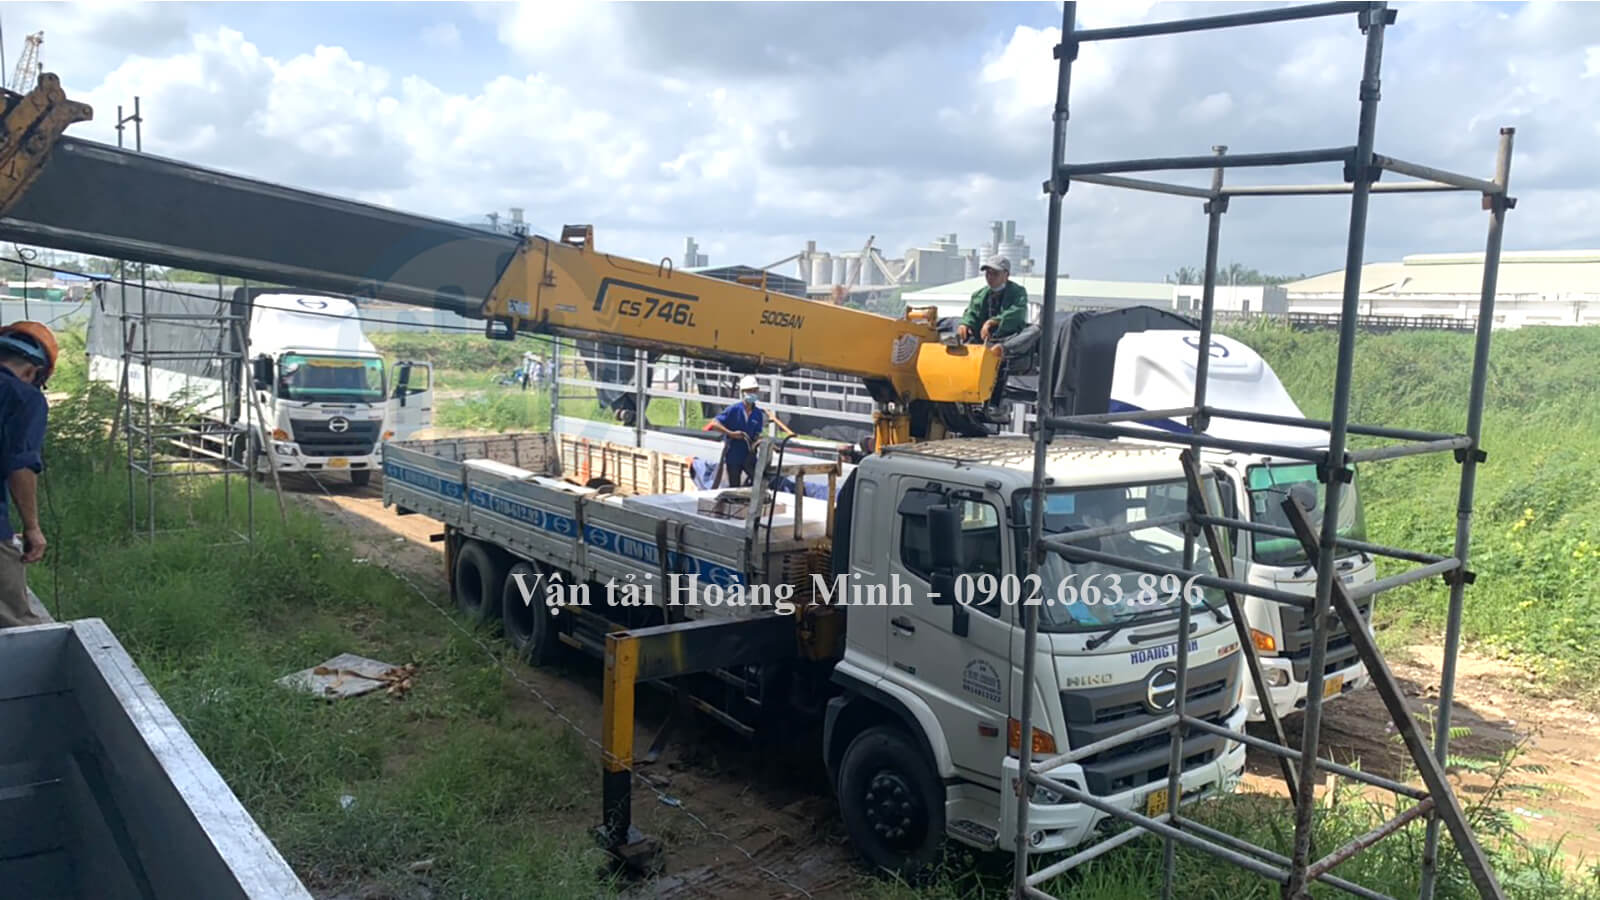 Hình ảnh xe tải Hoàng Minh đang chở hàng VLXD tại công trình ở khu vực An Giang.jpg